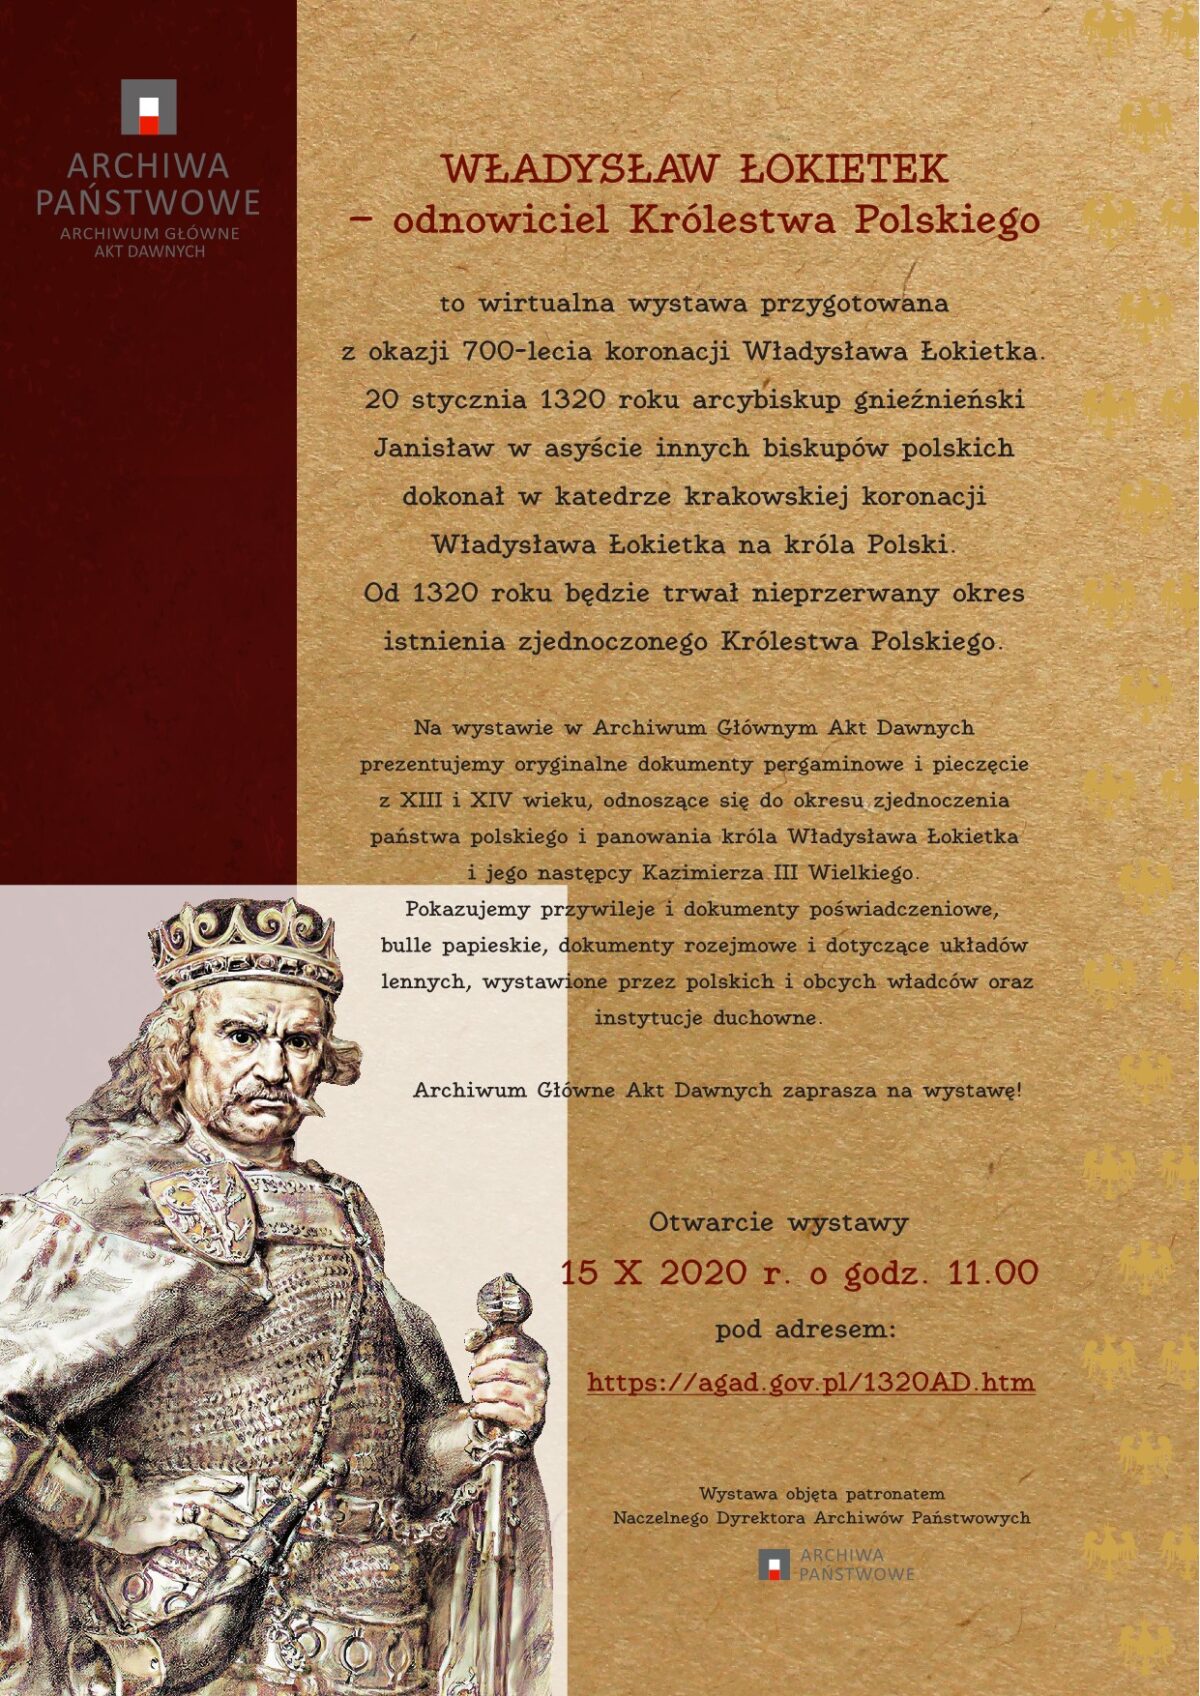 POLSKA: 700-lecie koronacji Władysława Łokietka – wystawa i koncert